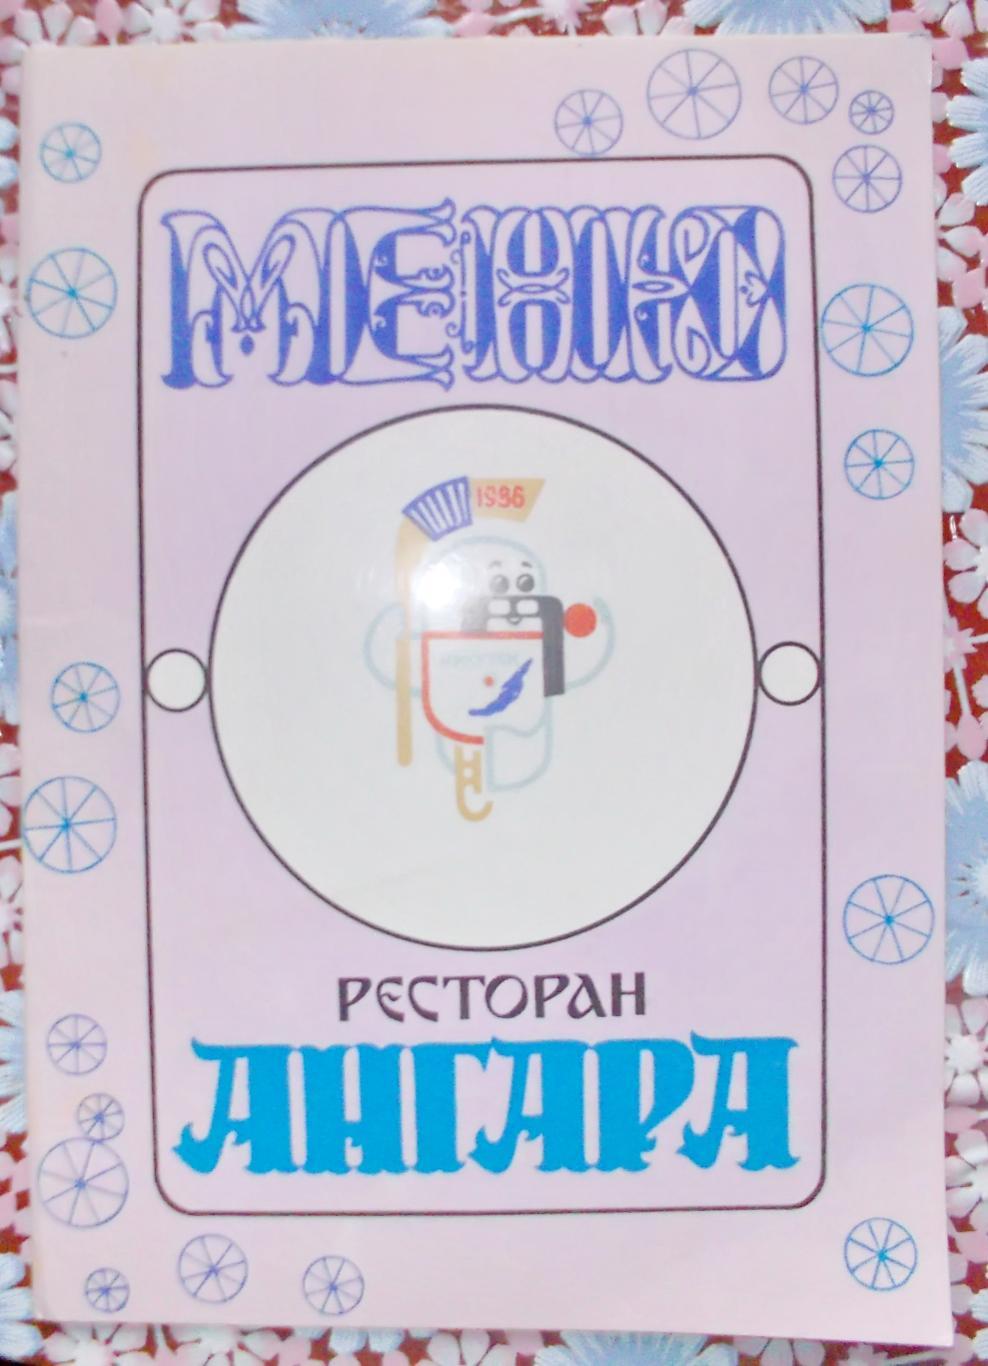 Обложка меню ресторана Ангара. Иркутск, 1986 год.